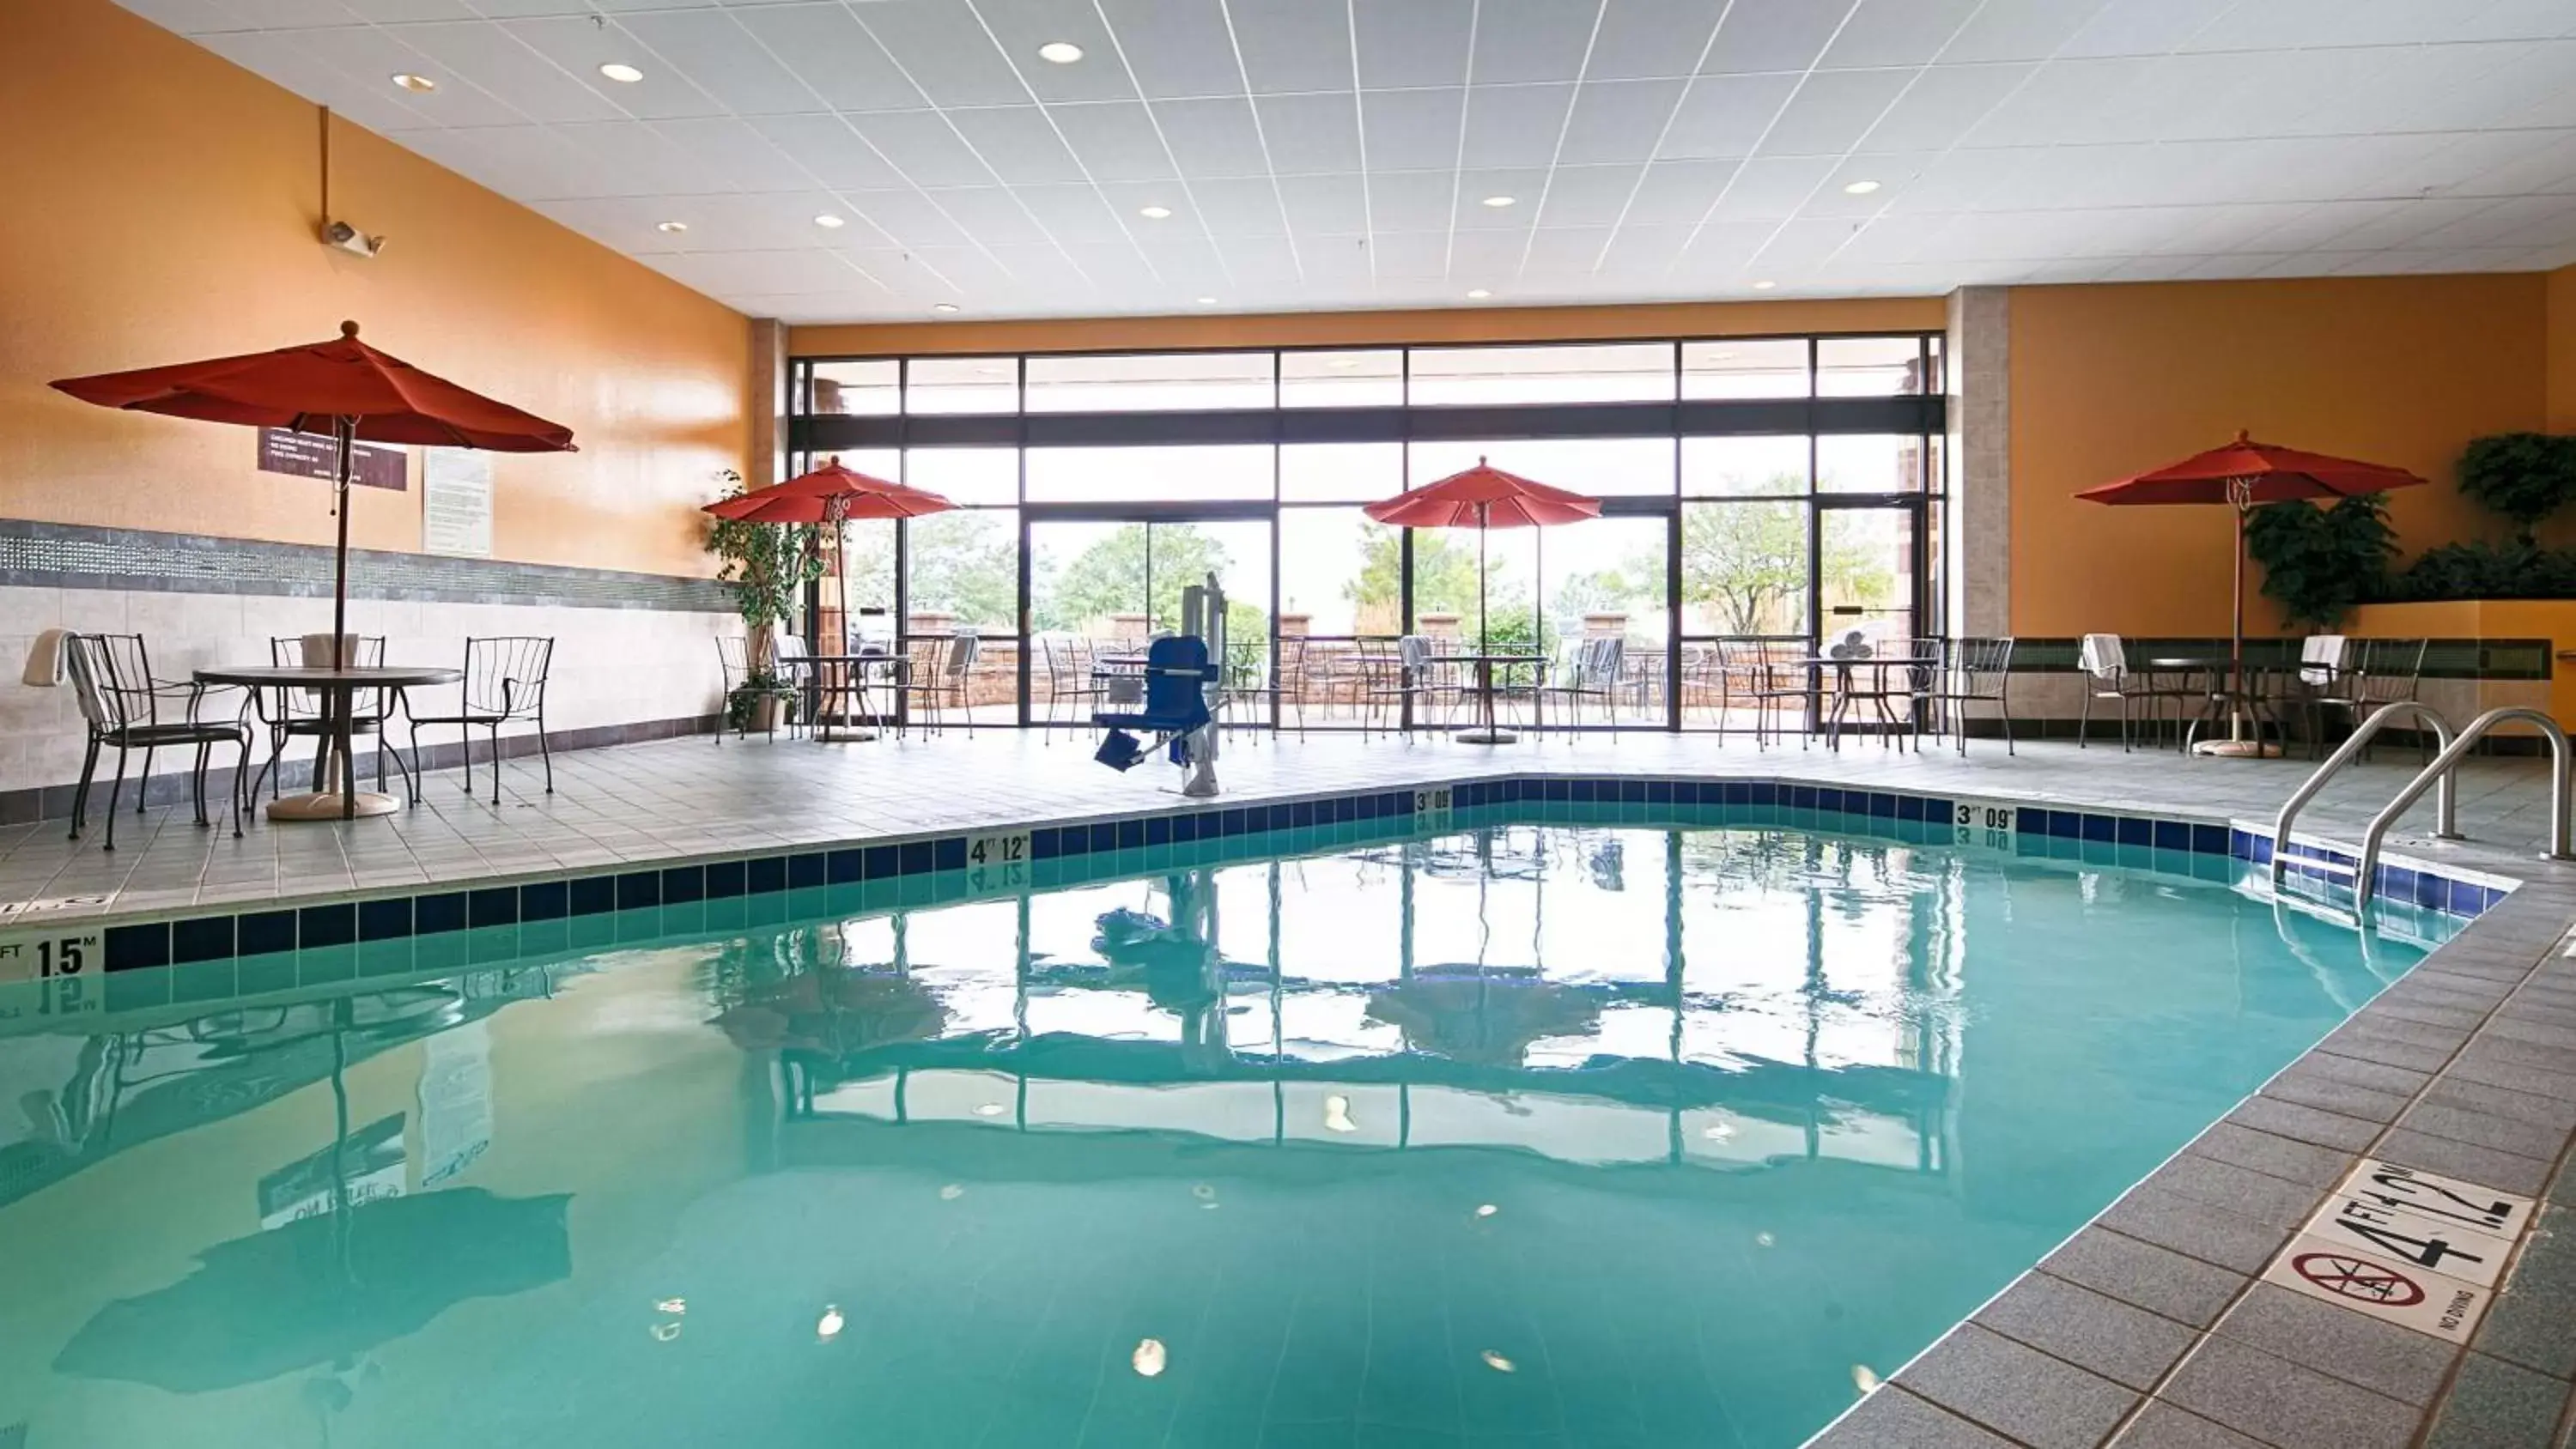 On site, Swimming Pool in Best Western Premier Nicollet Inn